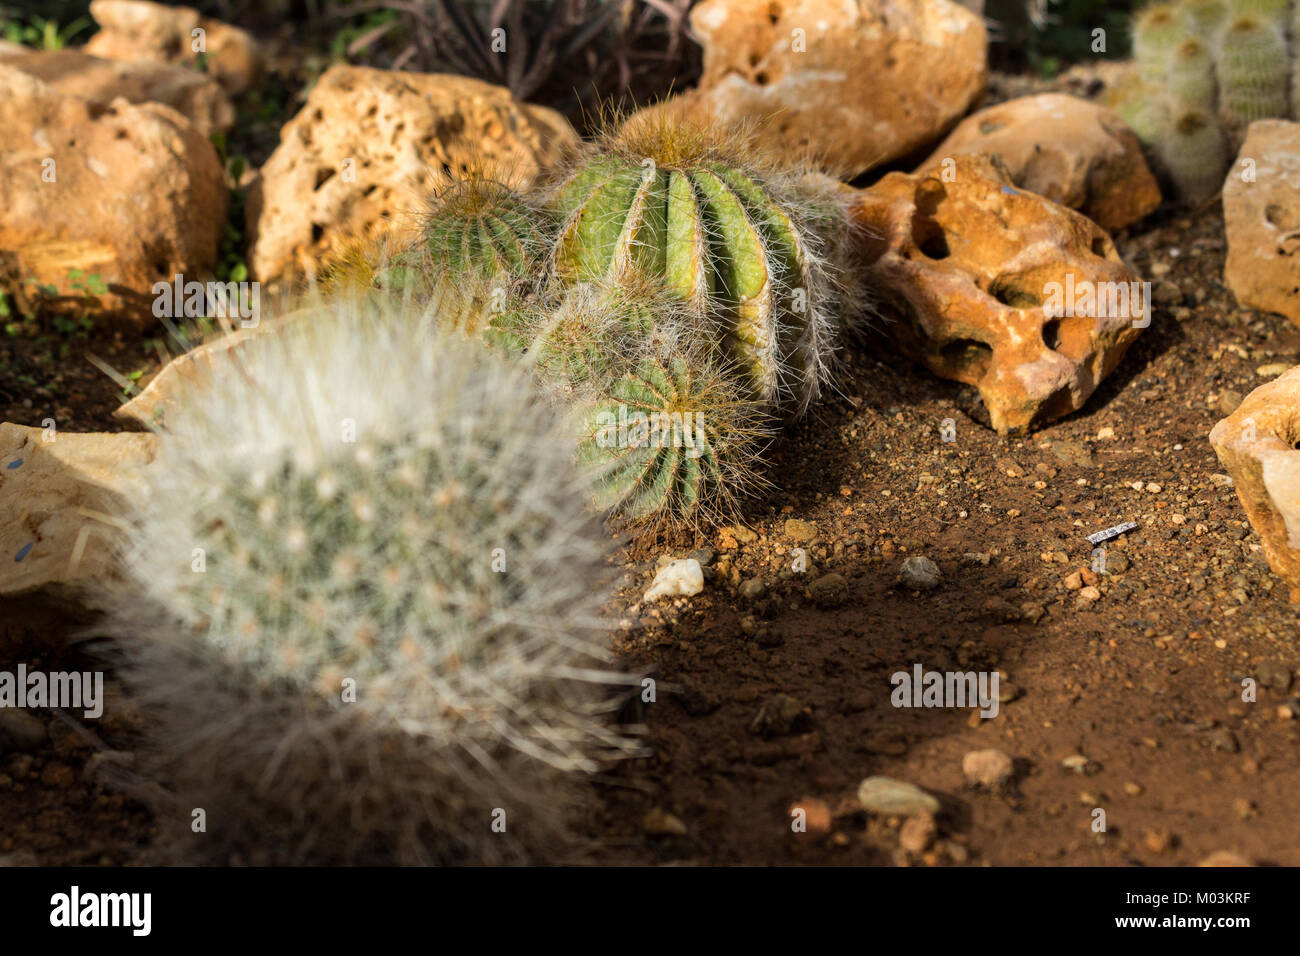 Cactus piantato nel terreno, close up shot Foto Stock